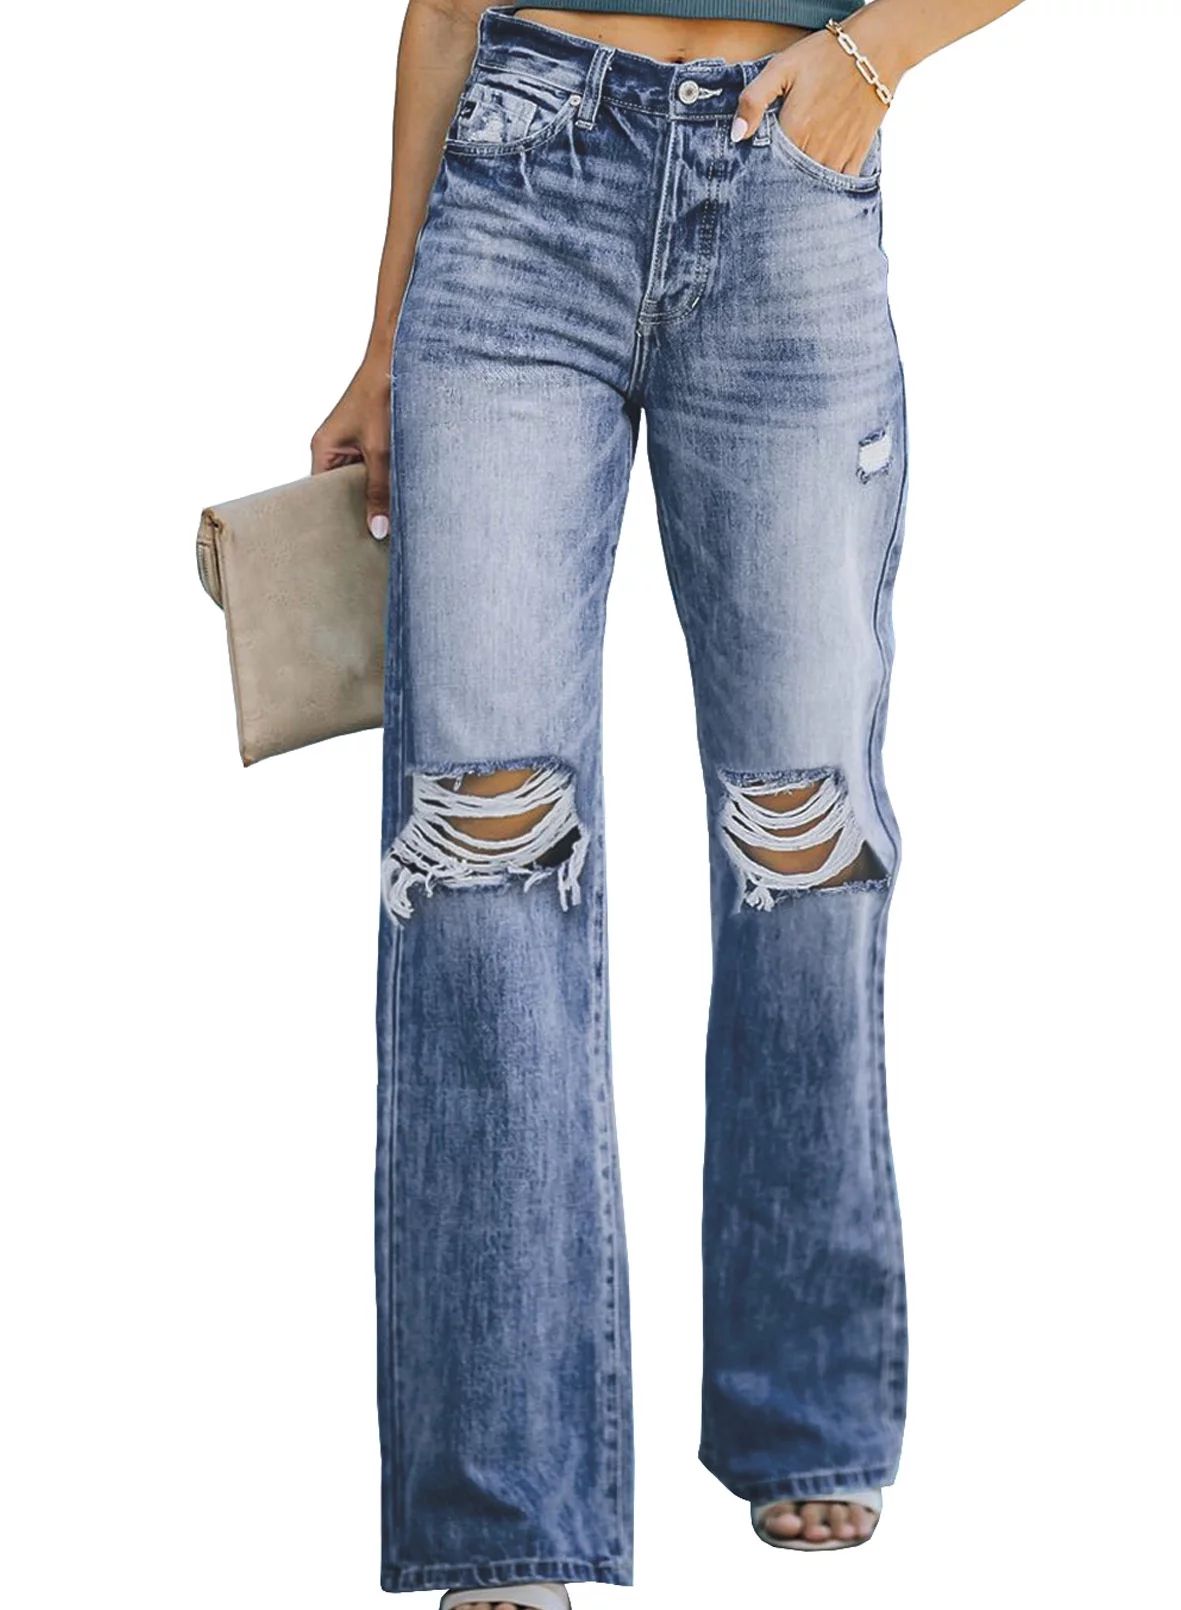 Aleumdr Women's High Waisted Jeans Butt Lift Stretch Ripped Jeans Juniors Girls Blue Distressed D... | Walmart (US)